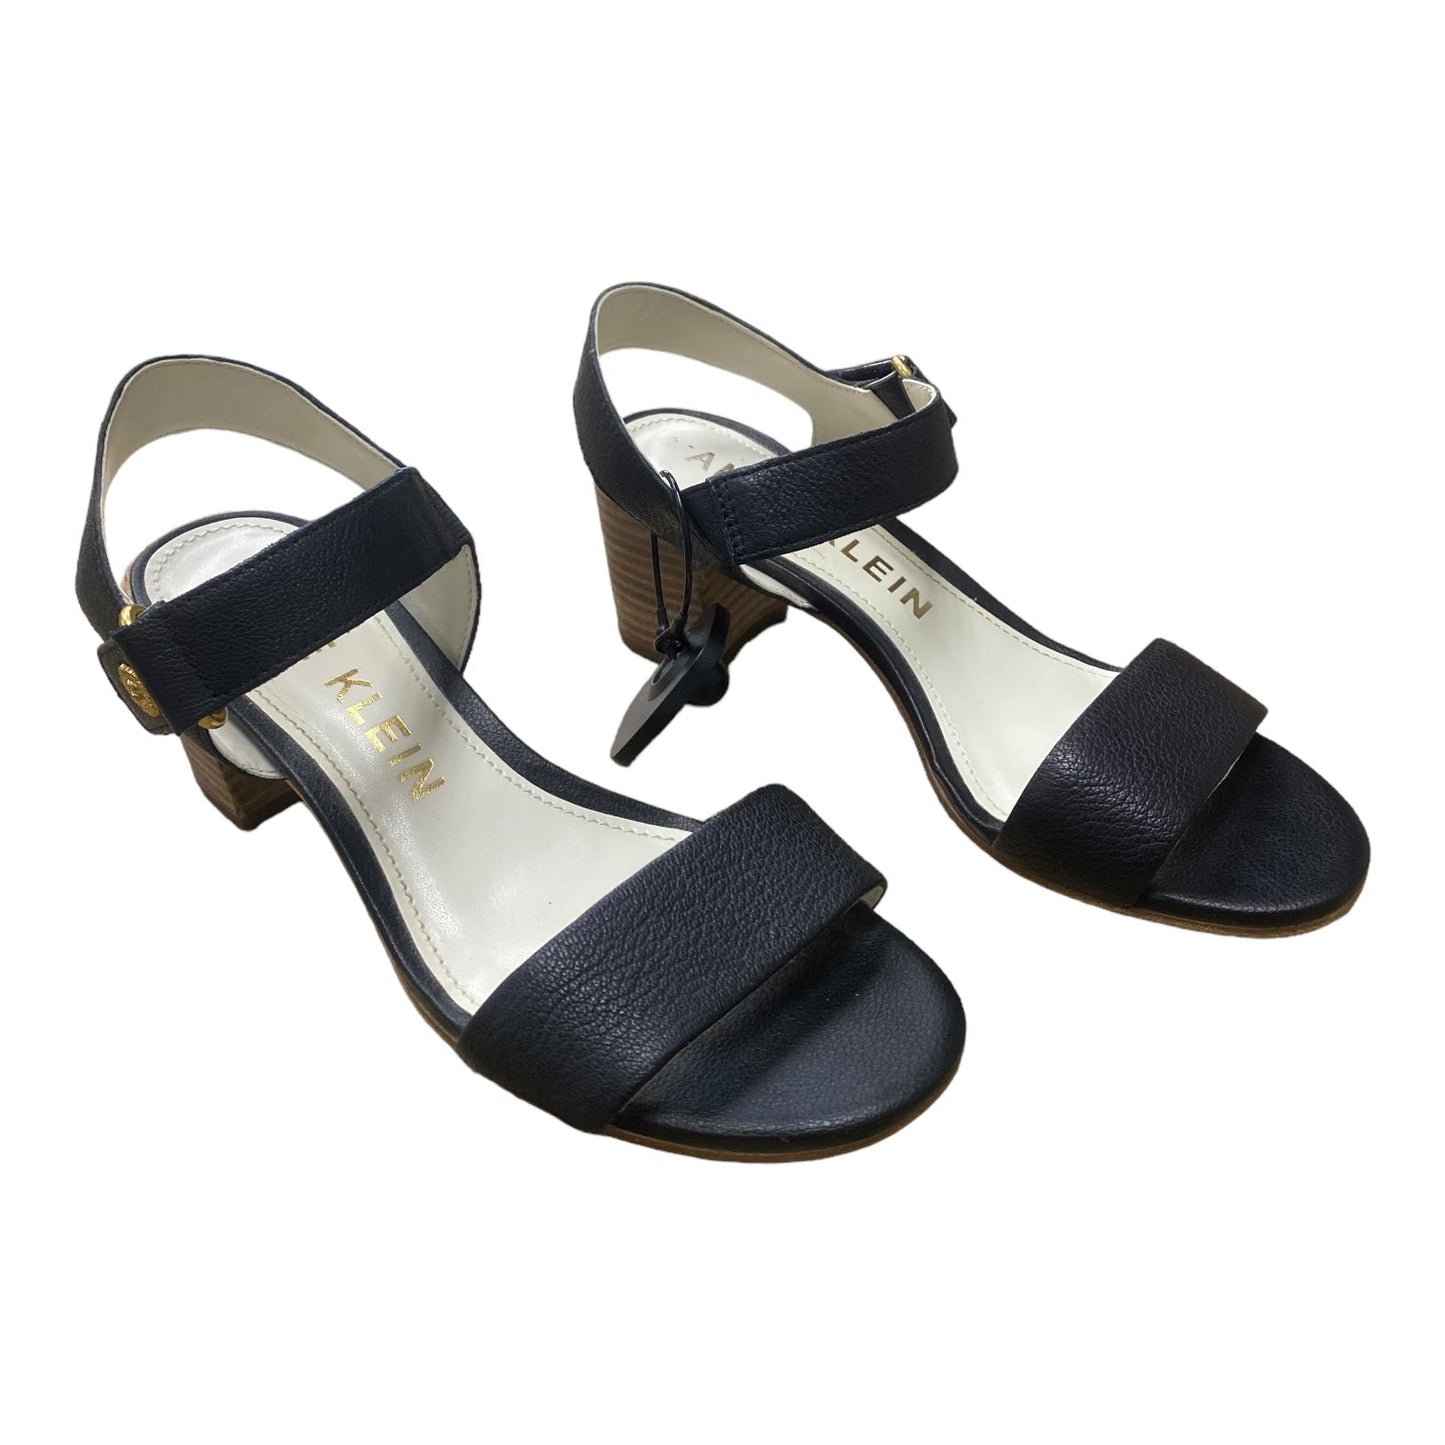 Black Sandals Heels Block Anne Klein, Size 7.5